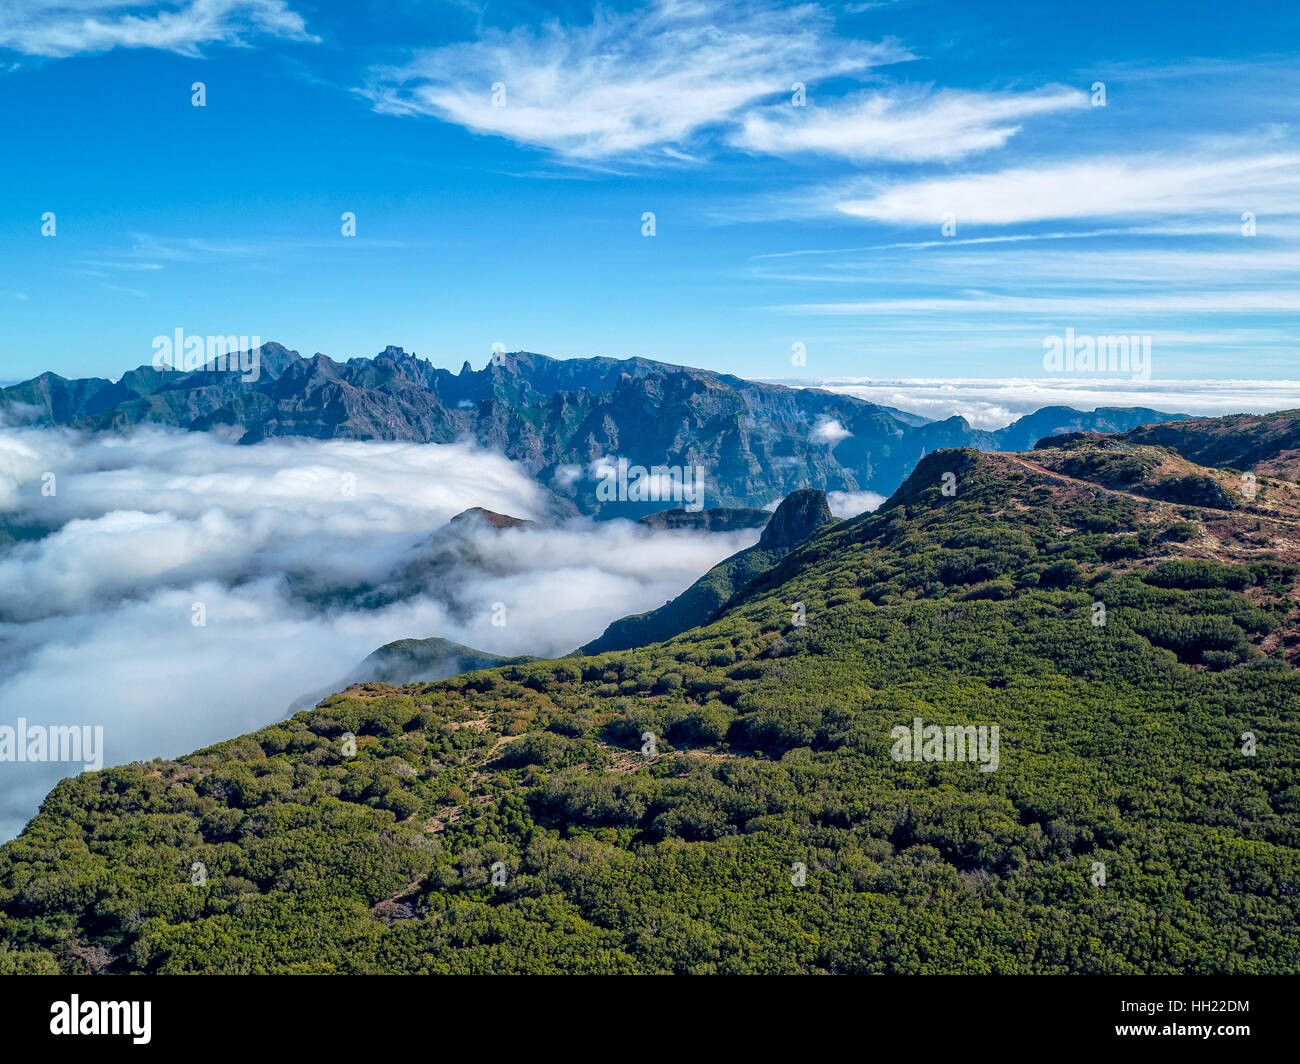 Paysages fantastiques, montagnes Rocheuses avec des nuages, l'île de Madère, vue aérienne Banque D'Images